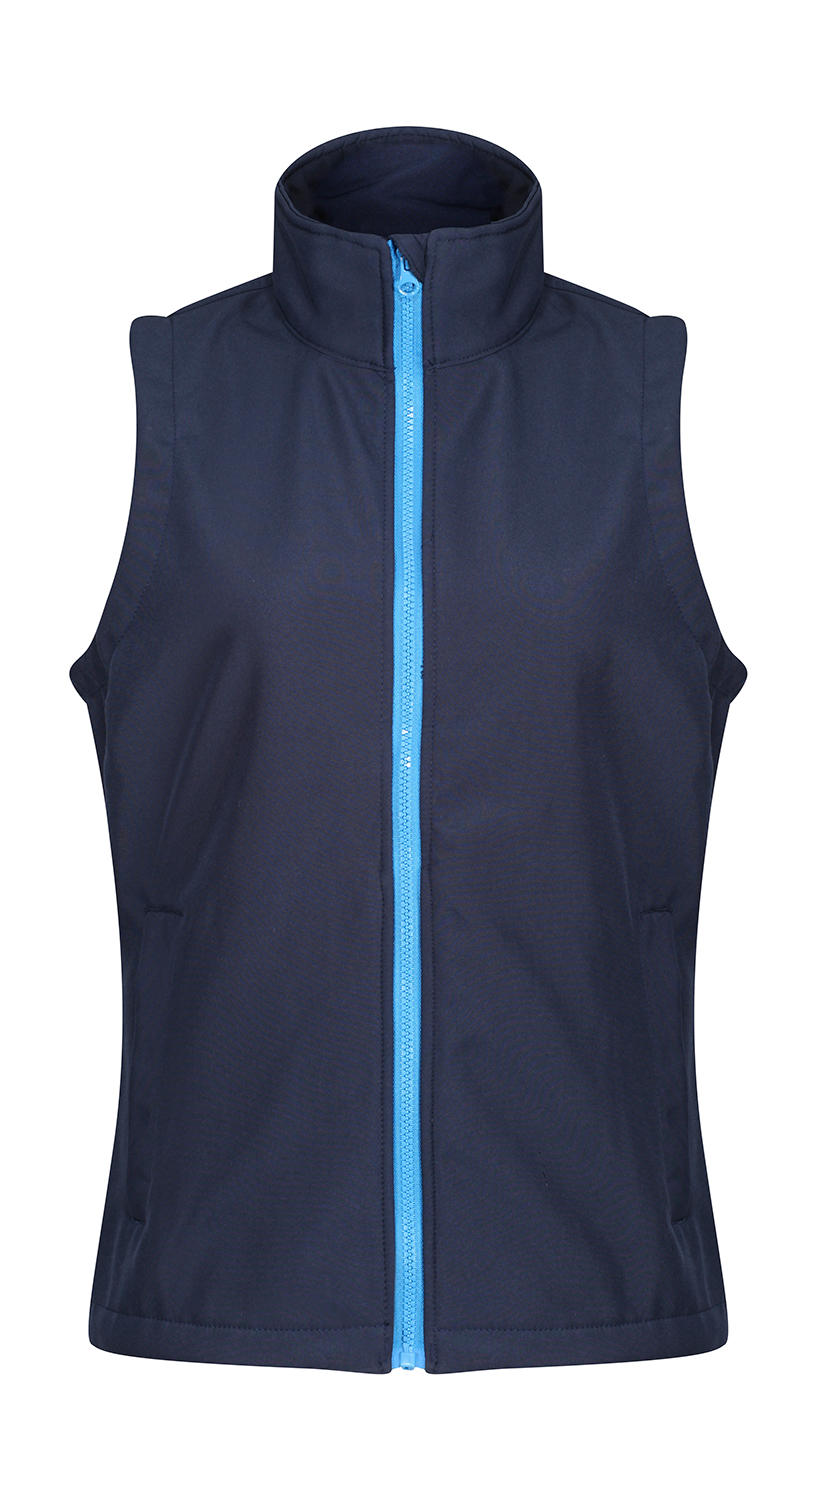 Dámska softshellová vesta Ablaze Printable - navy/french blue